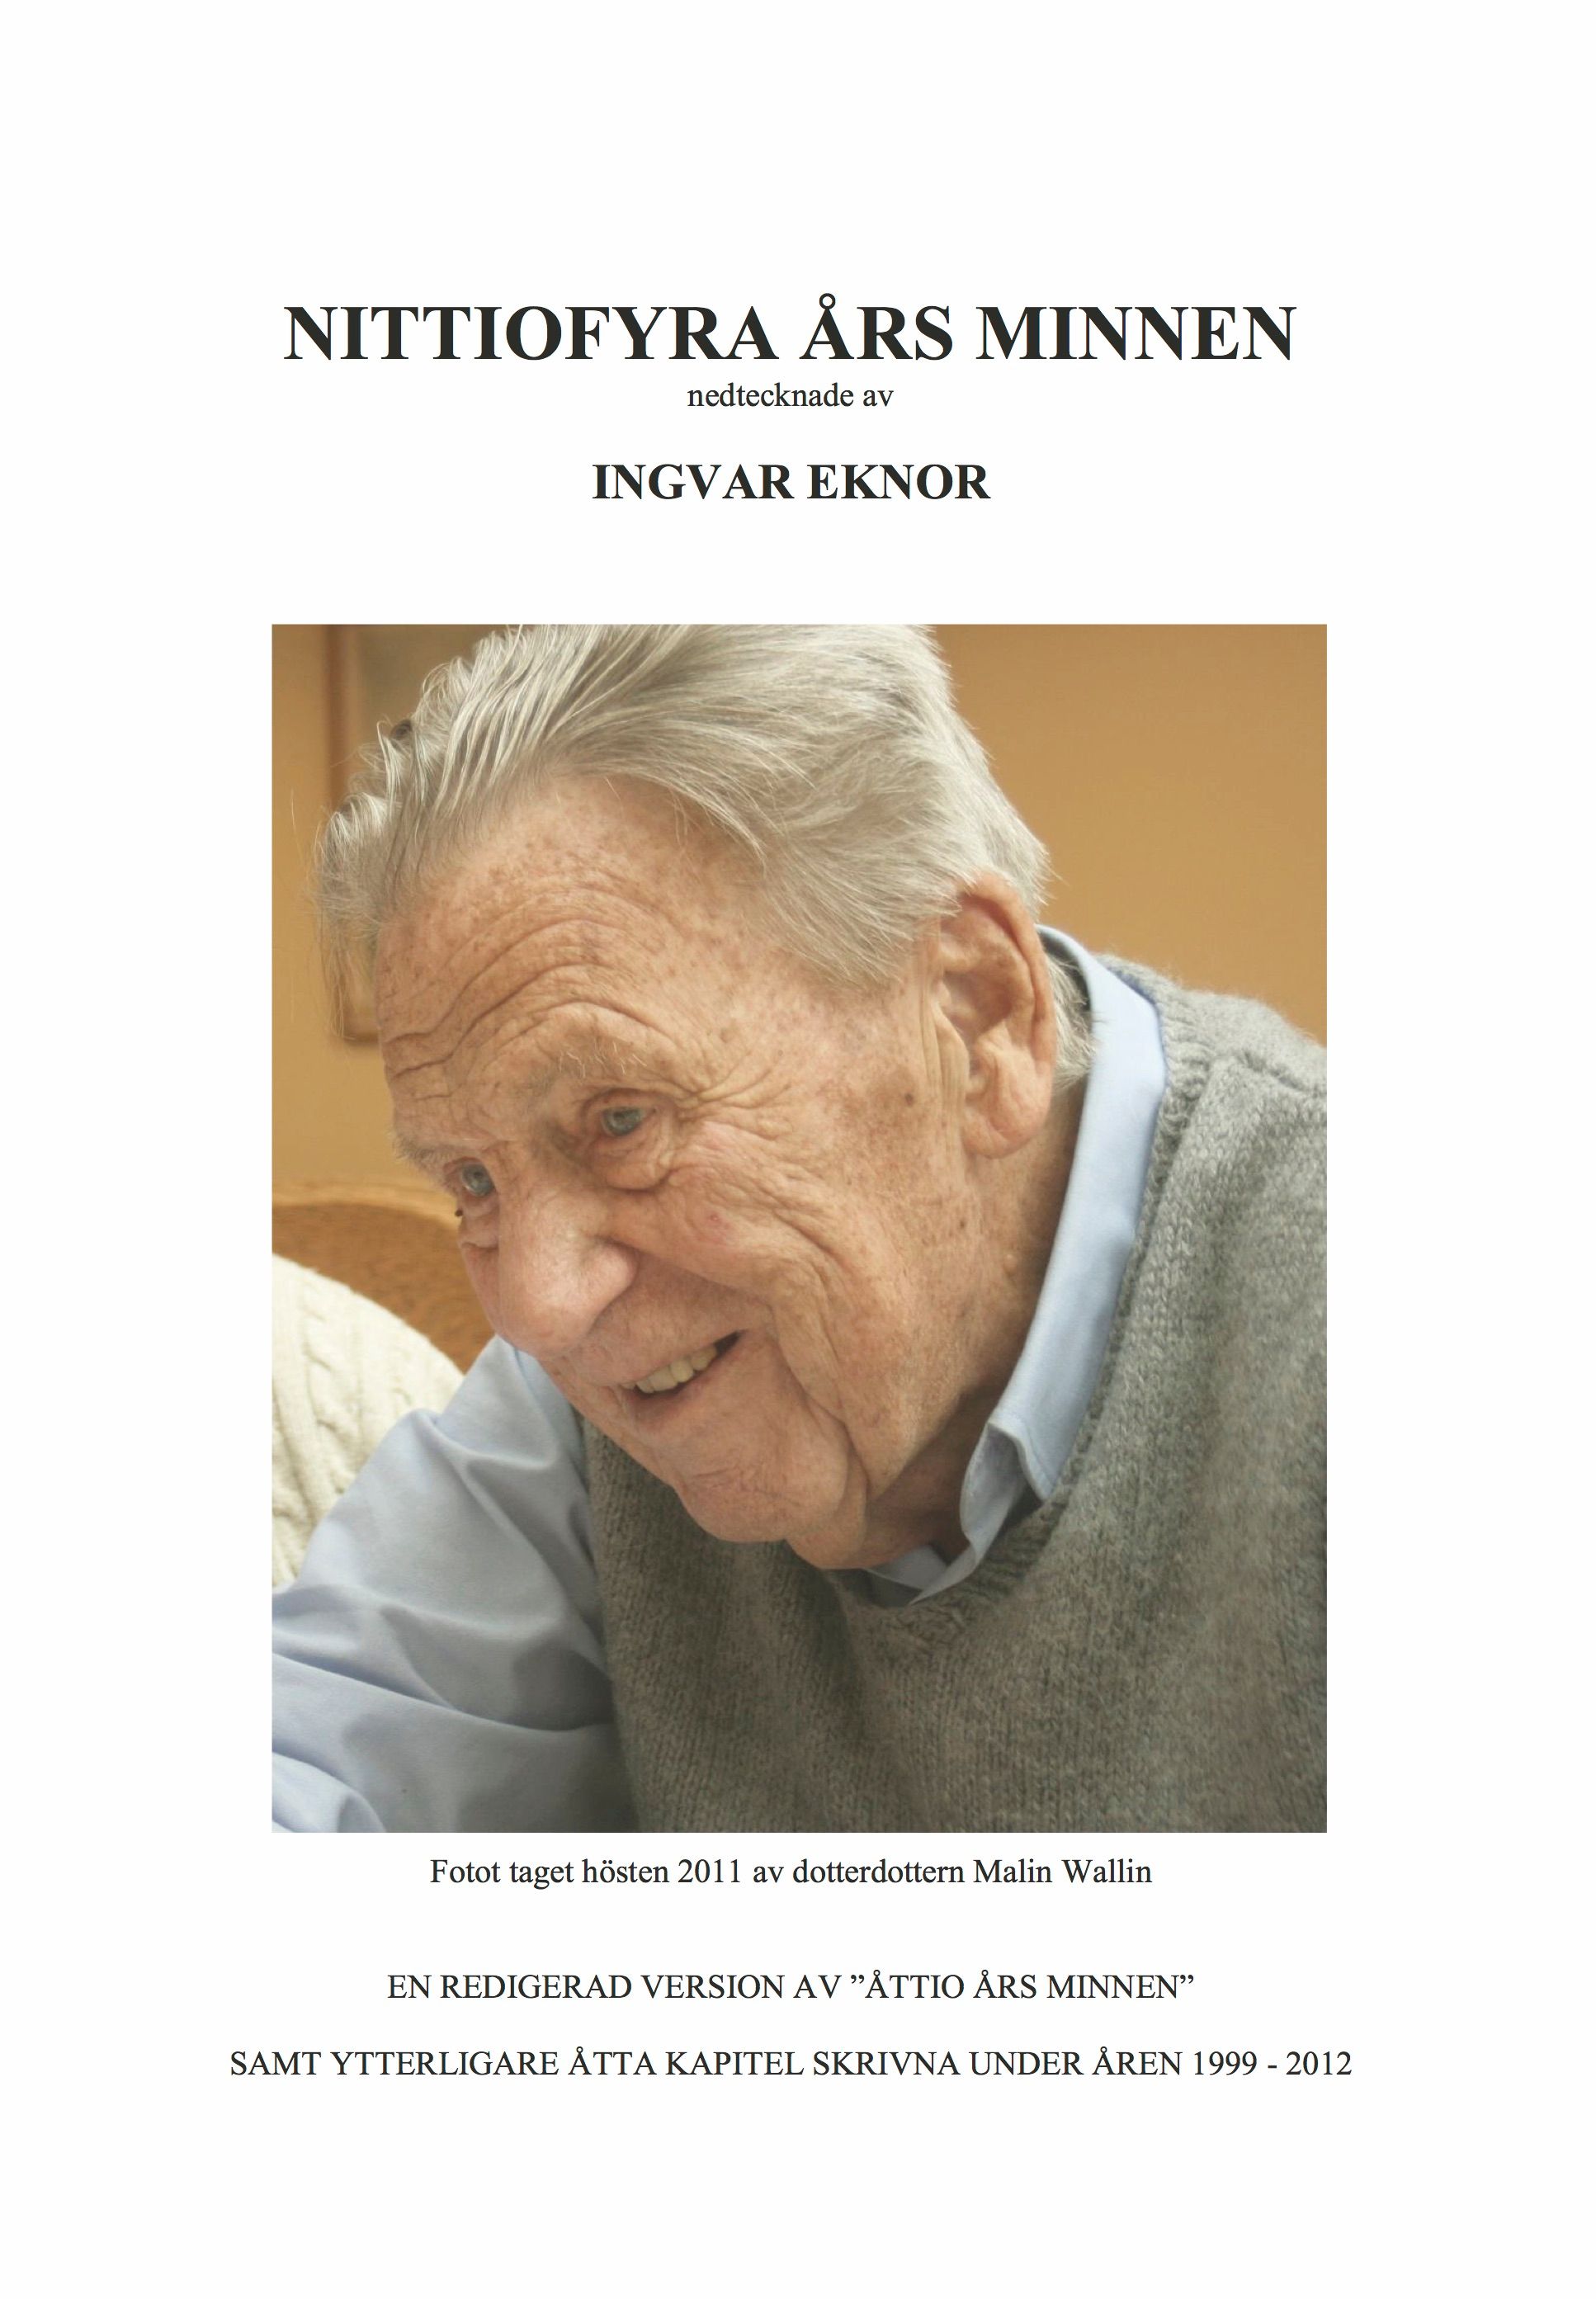 Nittiofyra års minnen, e-bok av Ingvar Eknor